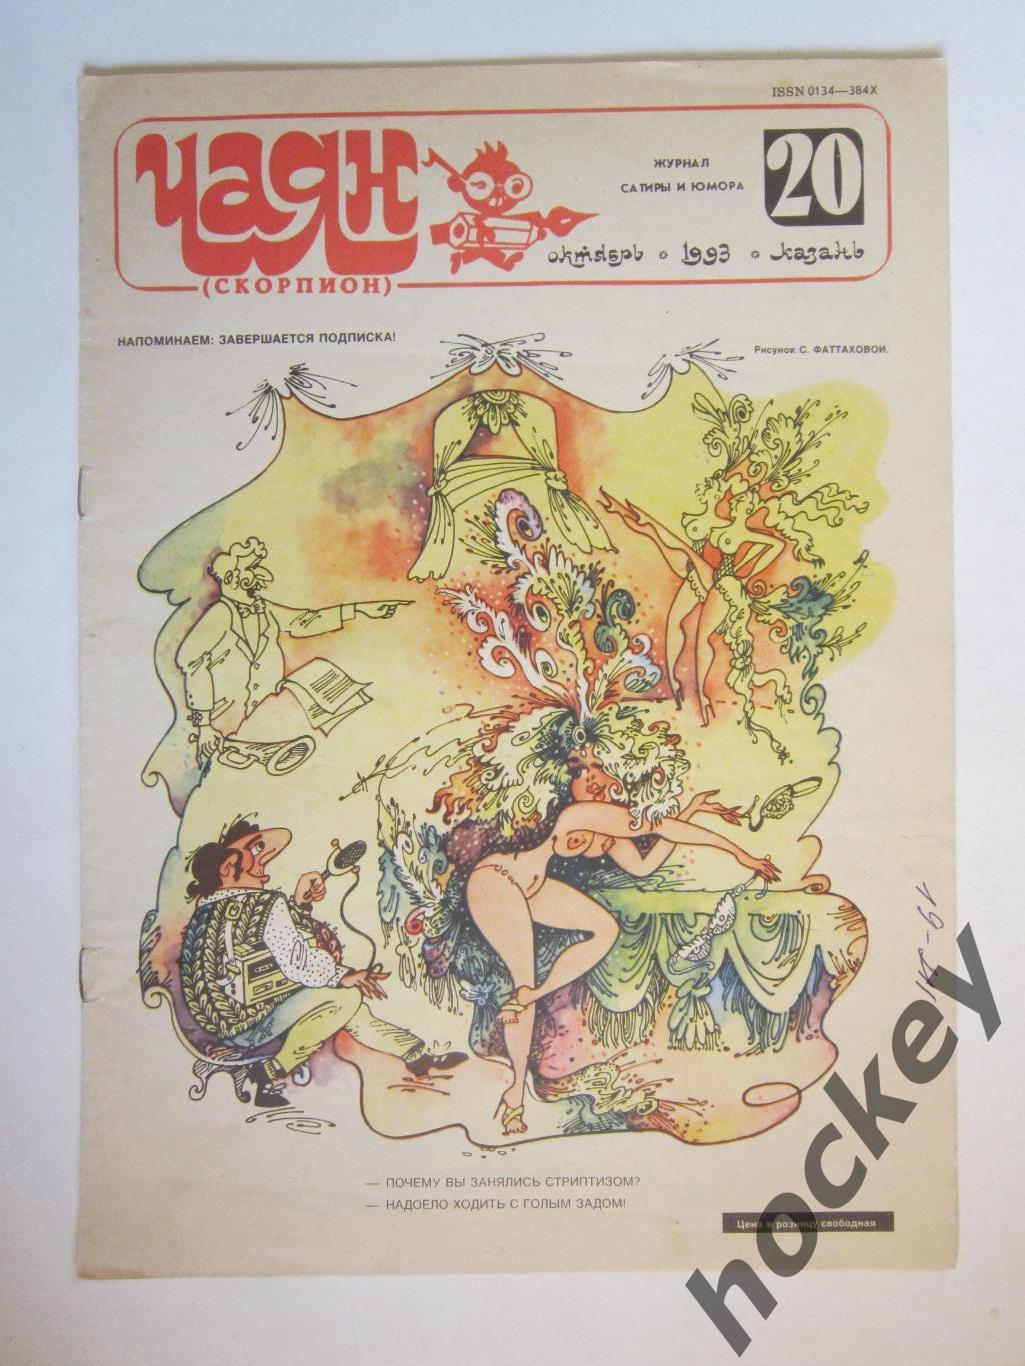 Журнал Чаян № 20 (октябрь).1993